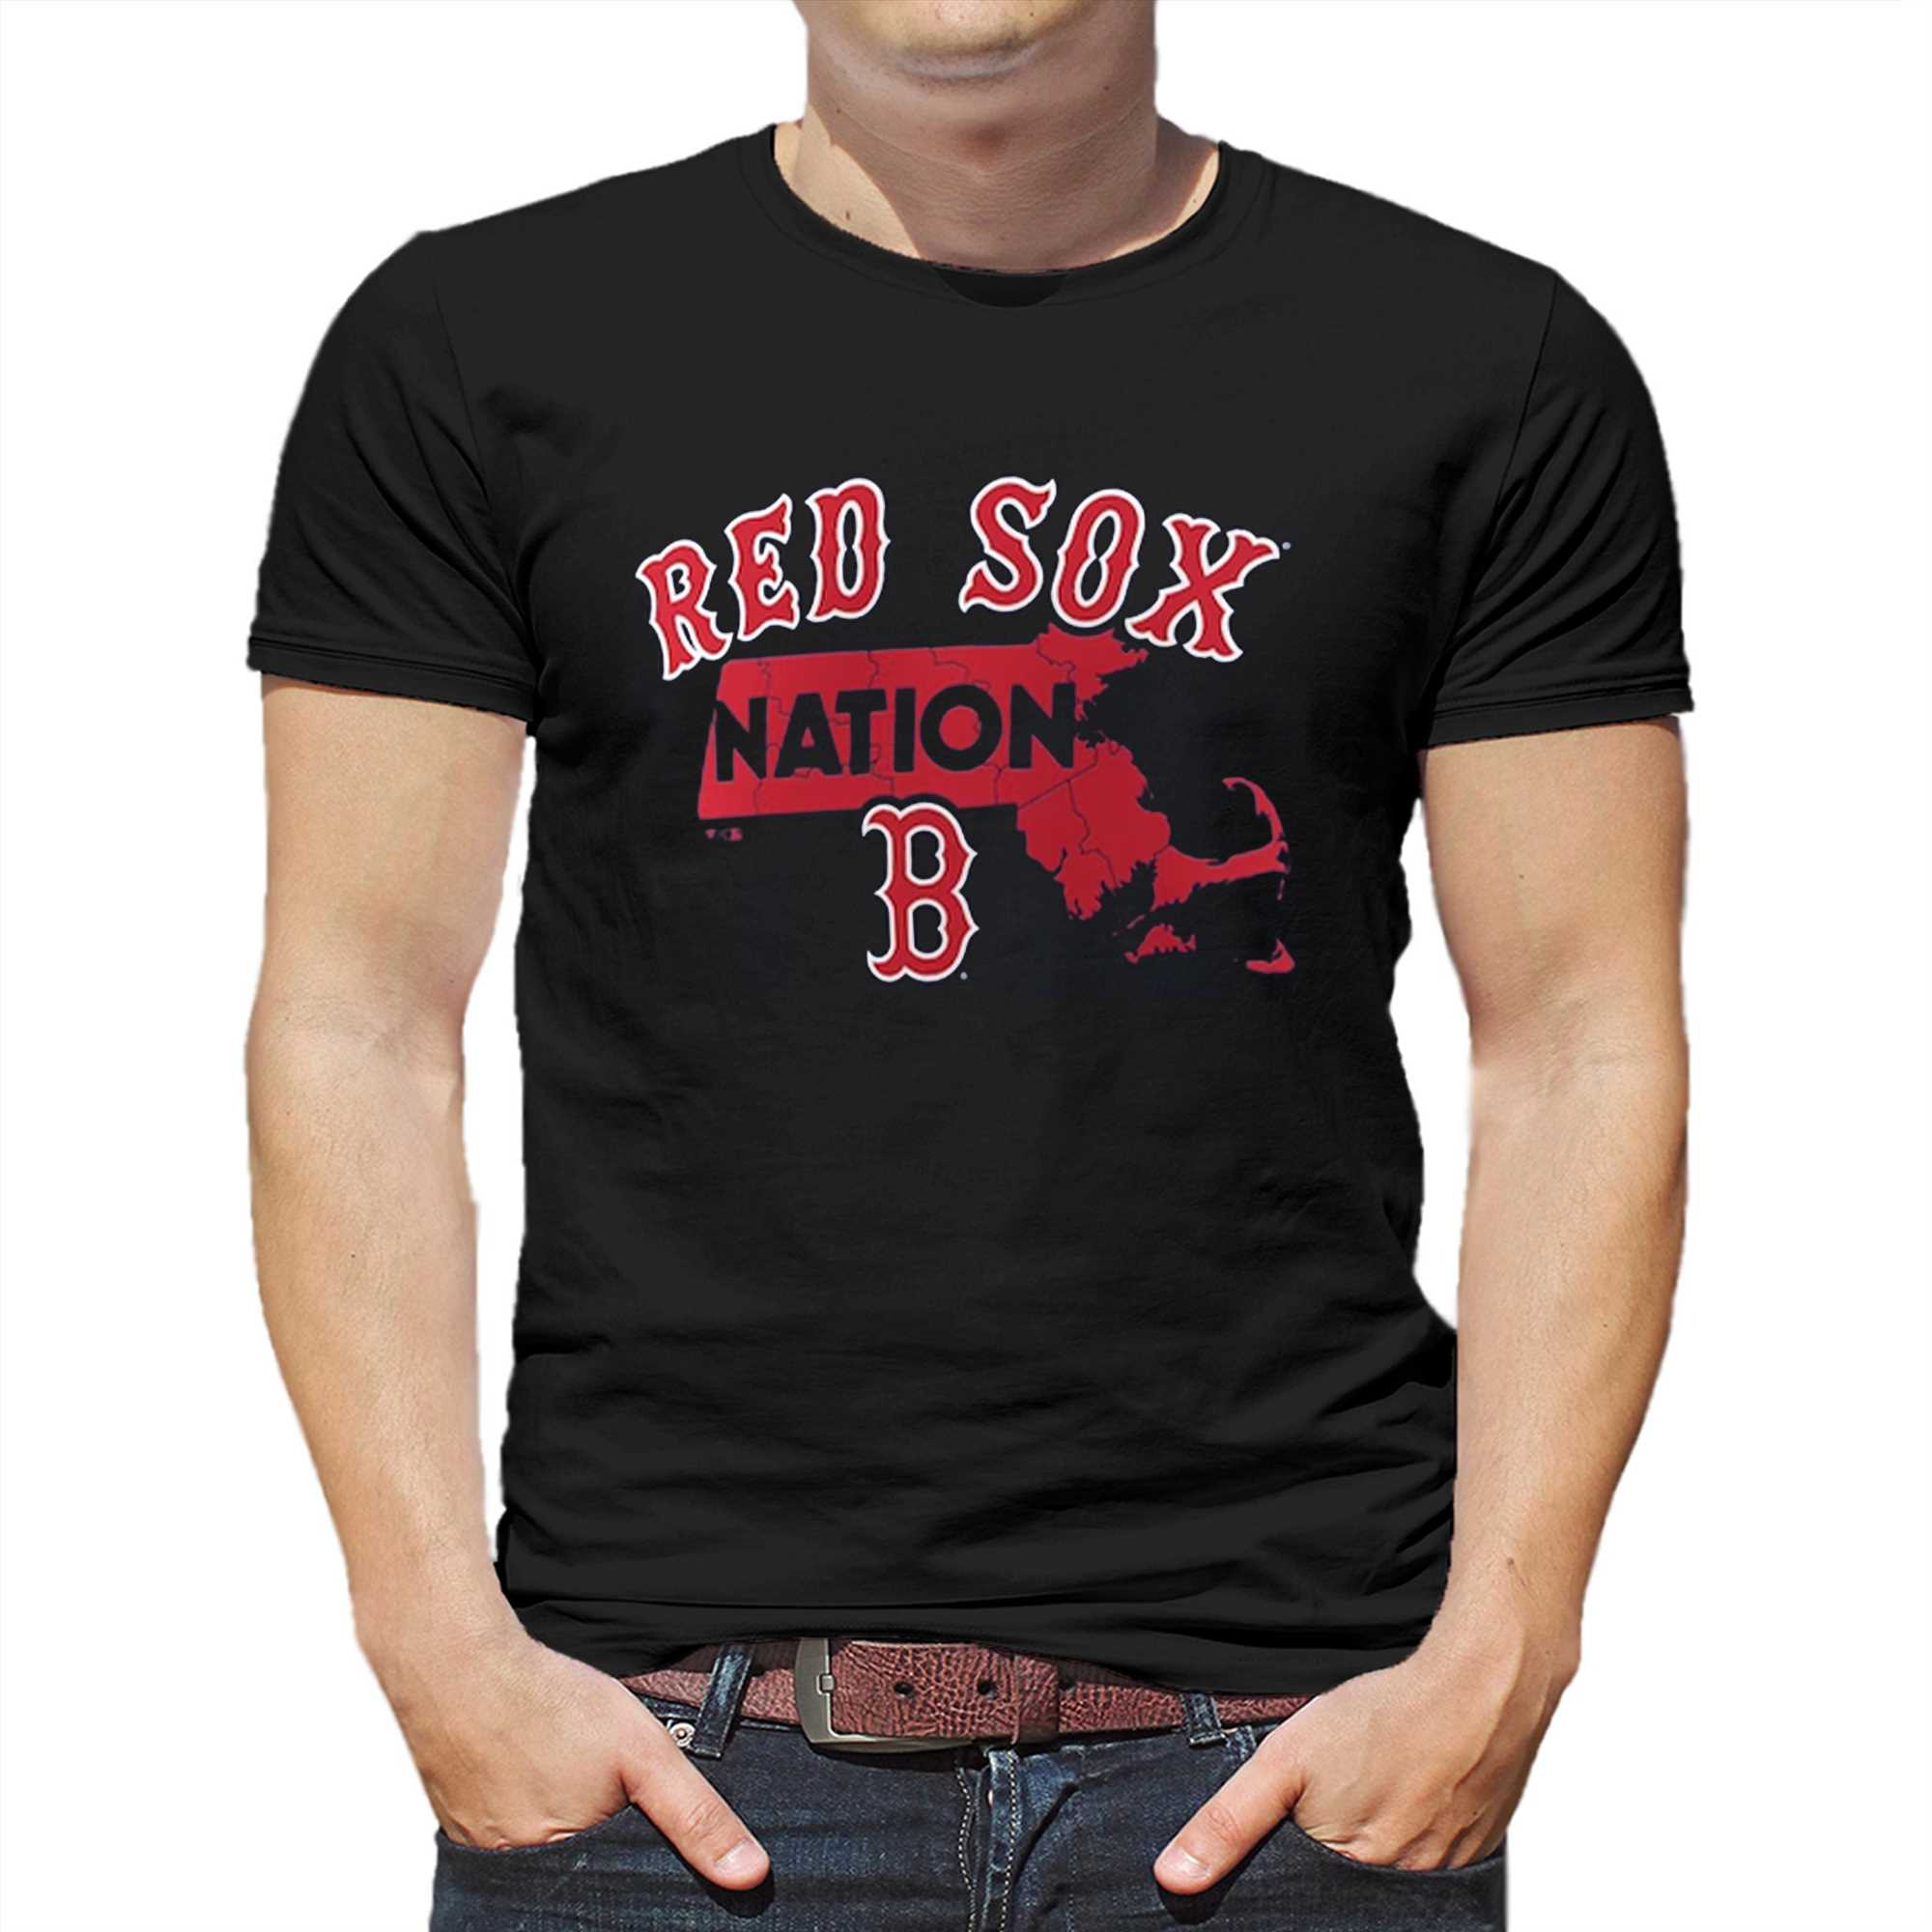 red sox nation shirt